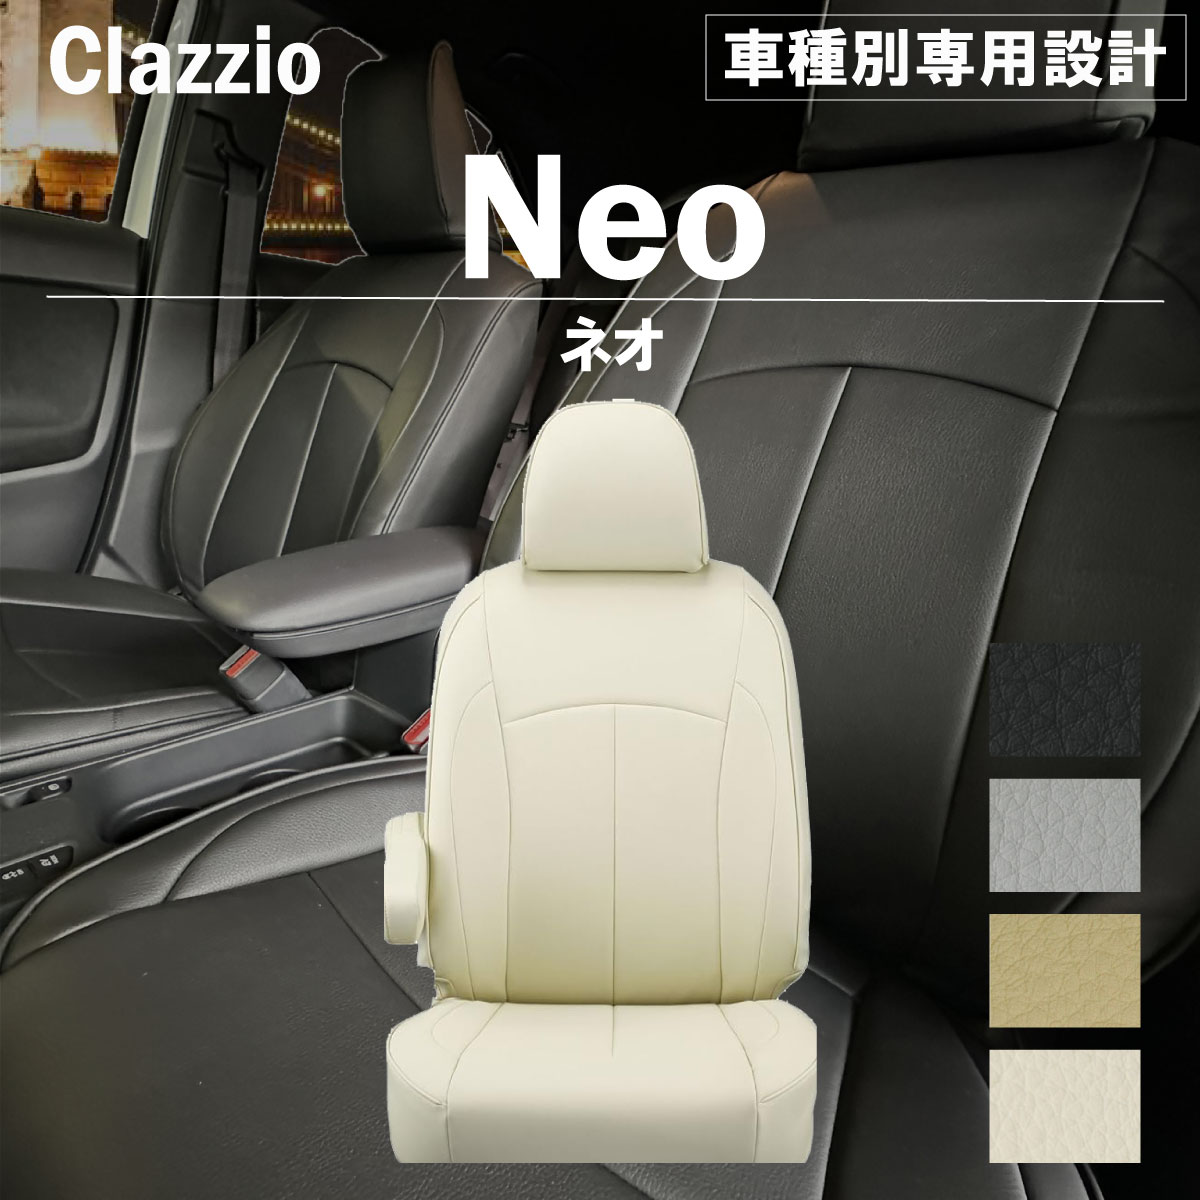 Clazzio Neo （クラッツィオ ネオ） ソフトな手触りで快適な座り心地クラッツィオ ネオ クラッツィオ ネオはコンフォートシリーズのシートデザインはそのままに、オールPVCで仕上げたタイプ。 ソフトな手触りで座り心地が良く、汚れてもさっと拭くだけ、メンテナンス性は抜群です。 ■カラーバリエーション ブラック ライトグレー タンベージュ アイボリー ■注意事項 同じ車種でも年式、型式、グレード、その他形状によって適合形状が異なりますのでご注意ください。 メーカー在庫がない商品、受注生産商品は30営業日程（状況により前後する場合がございます。）の納期がかかりますのでご了承ください。 受注生産商品は受注後のキャンセル及び仕様変更はできませんのでご了承ください。 お客様希望の返品・交換につきましては送料をご負担いただく場合がございますのでご了承ください。 ご使用の端末によってモニターの発色が異なります。実際の商品と色味が異なる場合がございますのでご了承ください。対応車種 メーカー：ホンダ【HONDA】 車名：モビリオ 年式：H13(2001)/12〜H15(2003)/12 型式：GB1 / GB2 定員：7人 グレード：W / A / A-Qパッケージ 適合条件：※1列目アームレスト付き車は背もたれカバーに穴を開ける加工が必要です 不適合条件：- その他：-